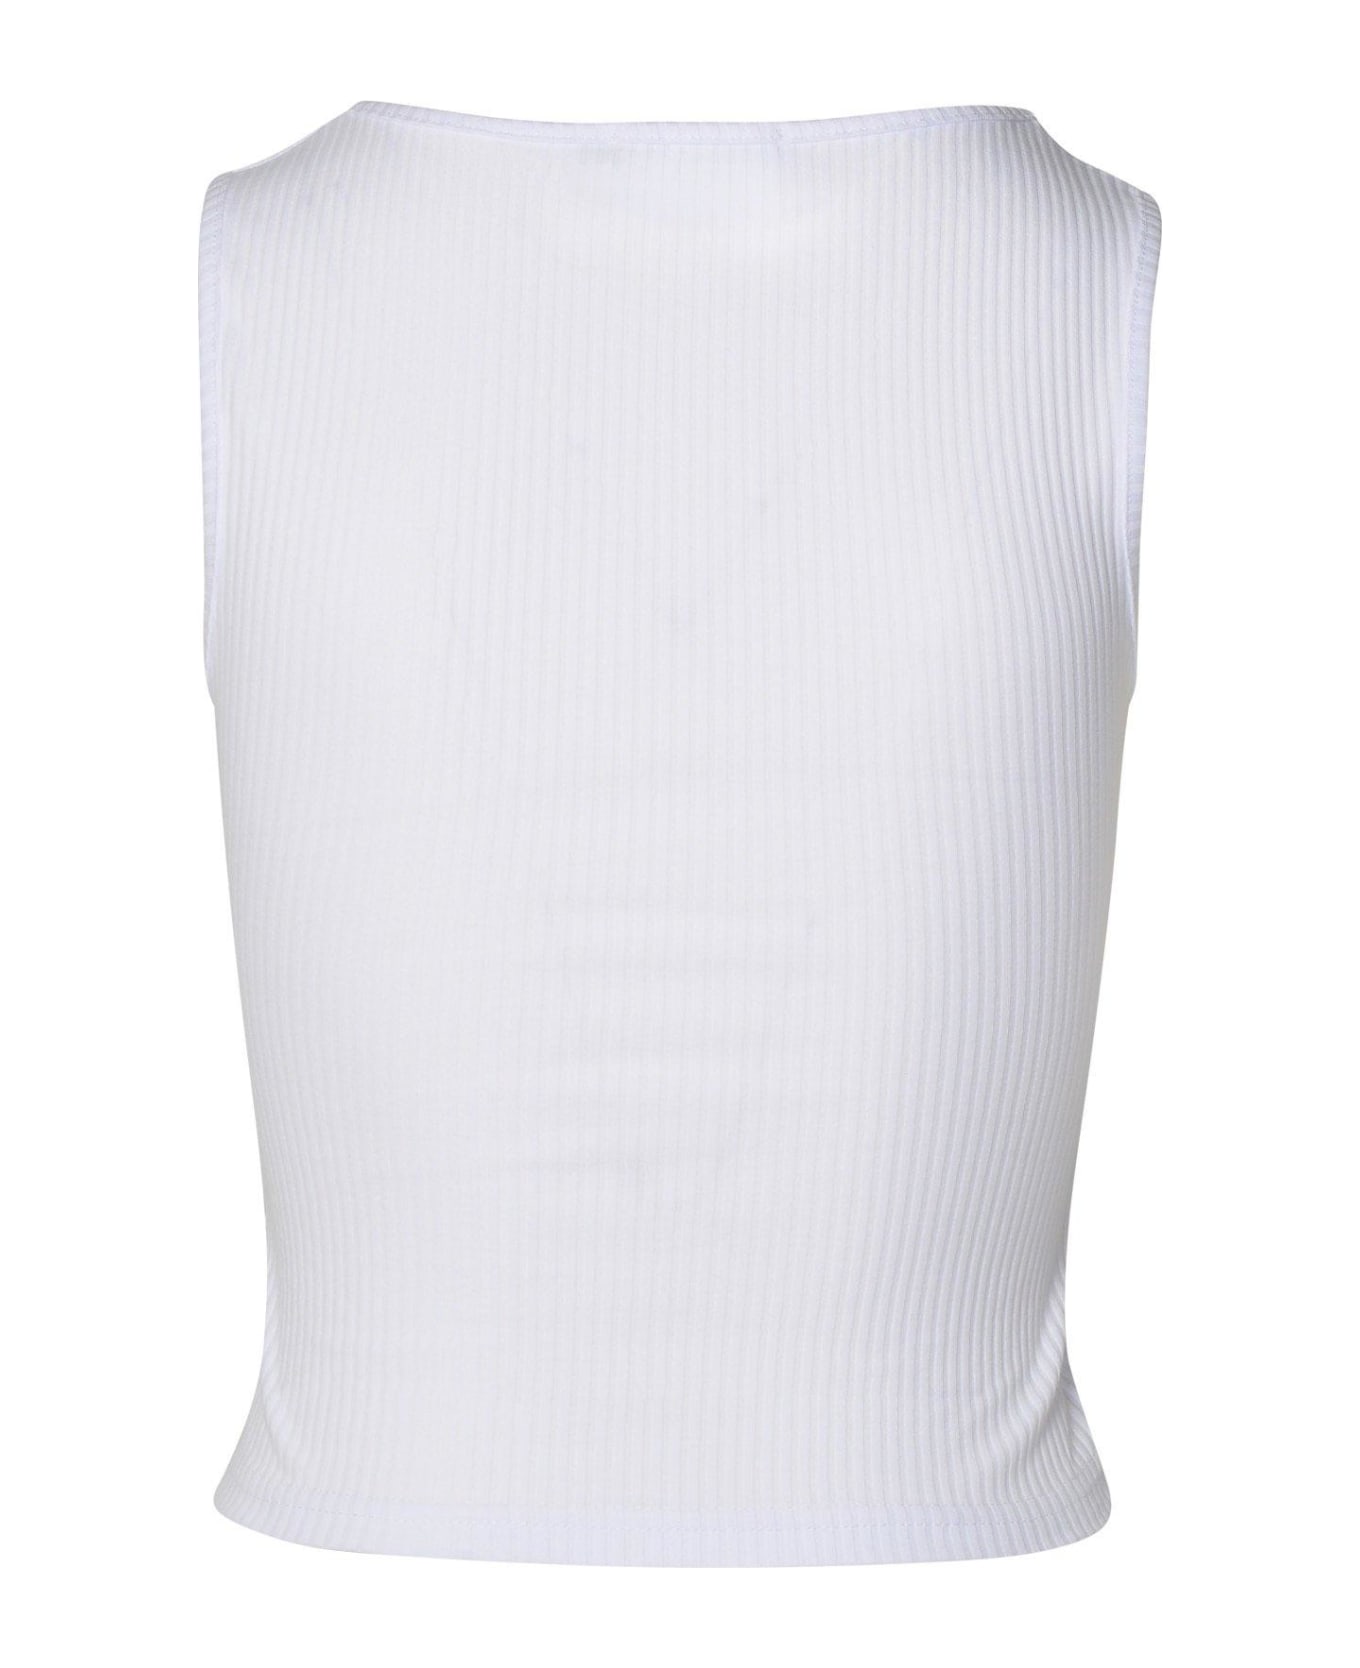 GCDS U-neck Logo Embellished Sleeveless Ribbed Top - Bianco Ottico トップス